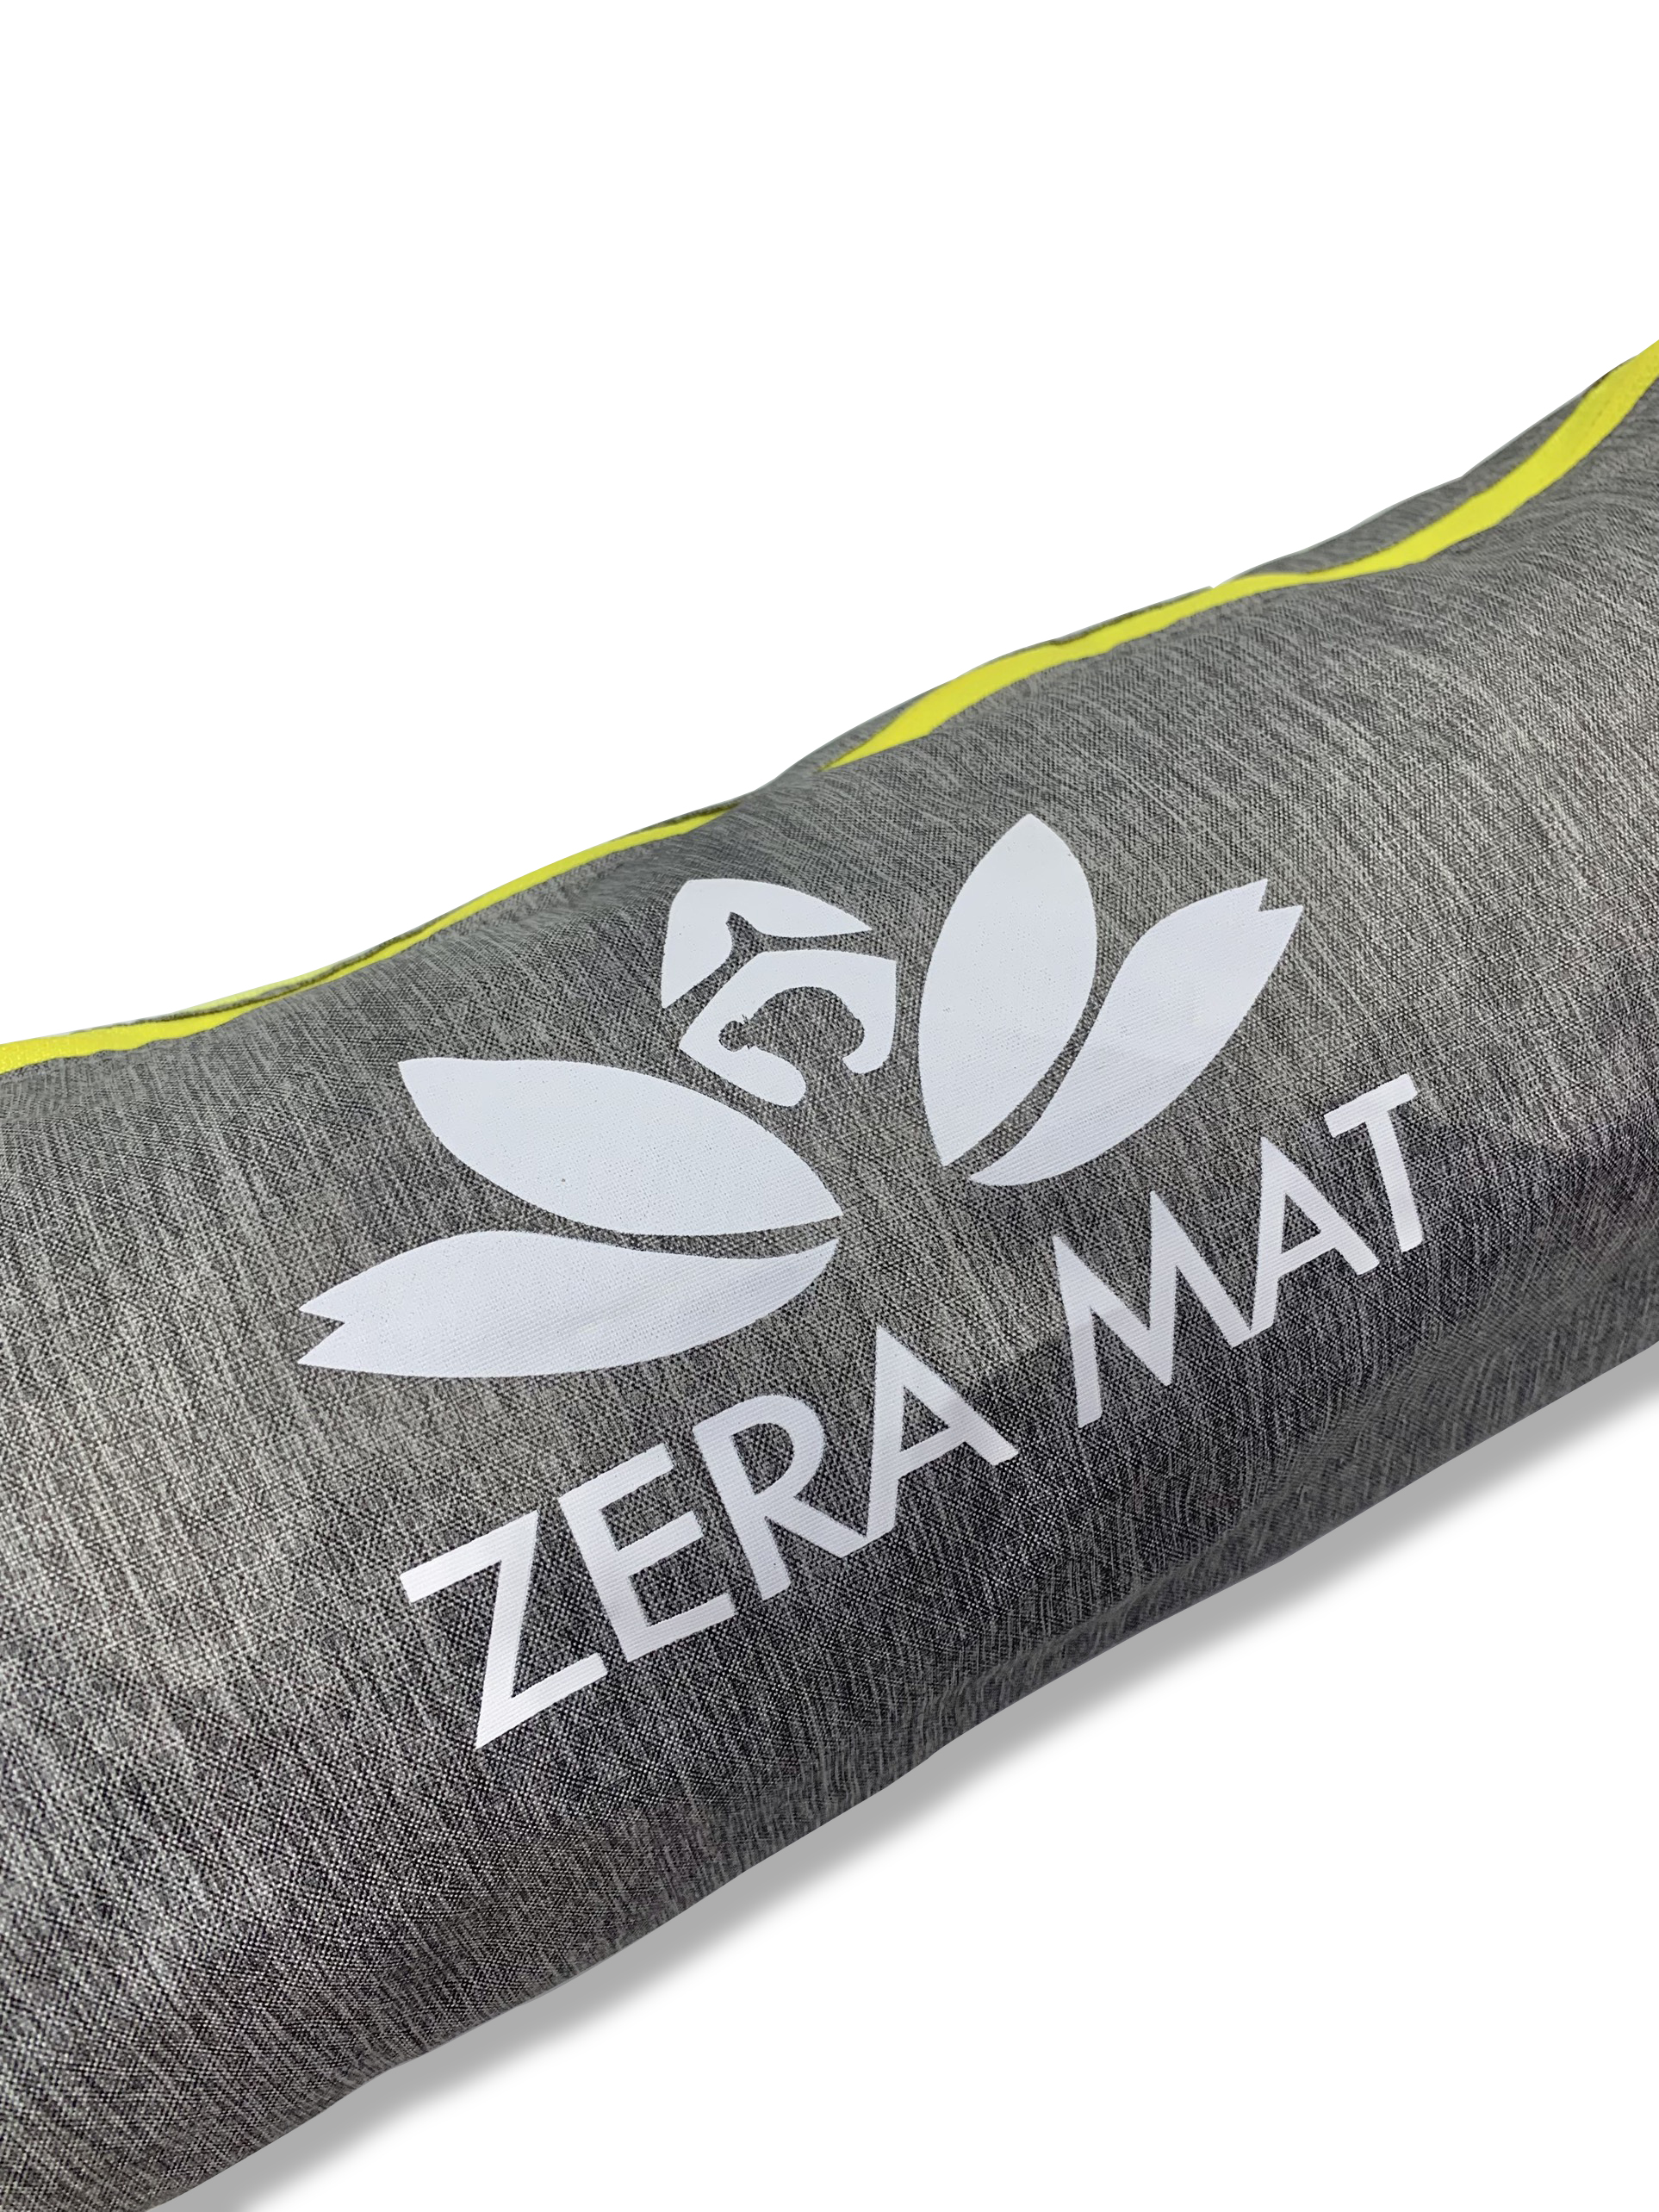 Túi đựng thảm yoga Yesure Relax  cao cấp lót PVC ( giao màu ngẫu nhiên) + tặng dây buộc thảm yoga